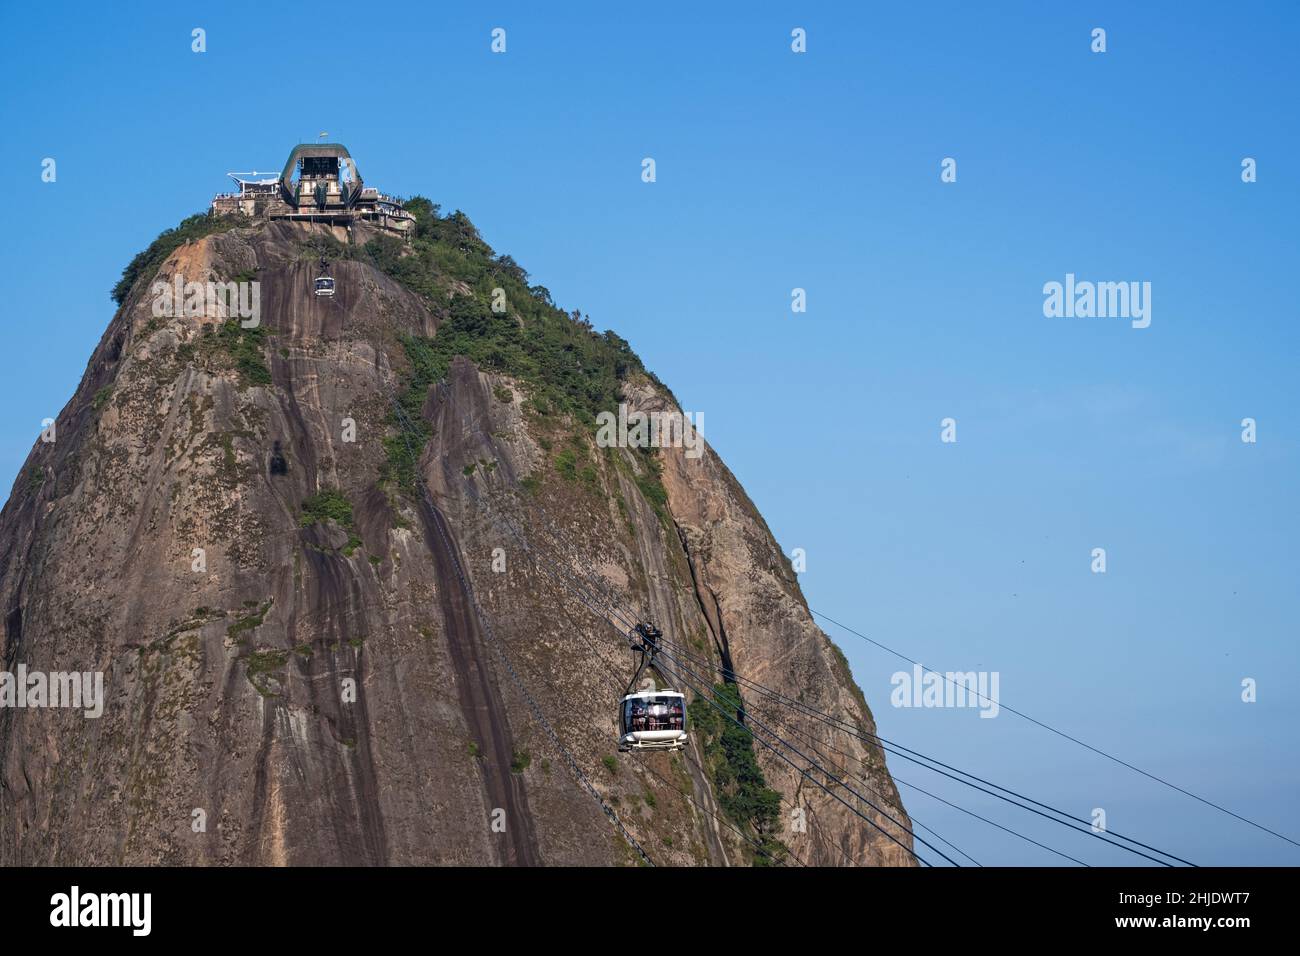 Tranvías en la montaña del Pan de Azúcar, cielo azul claro, no hay personas, espacio de copia, Río de Janeiro, Brasil Foto de stock